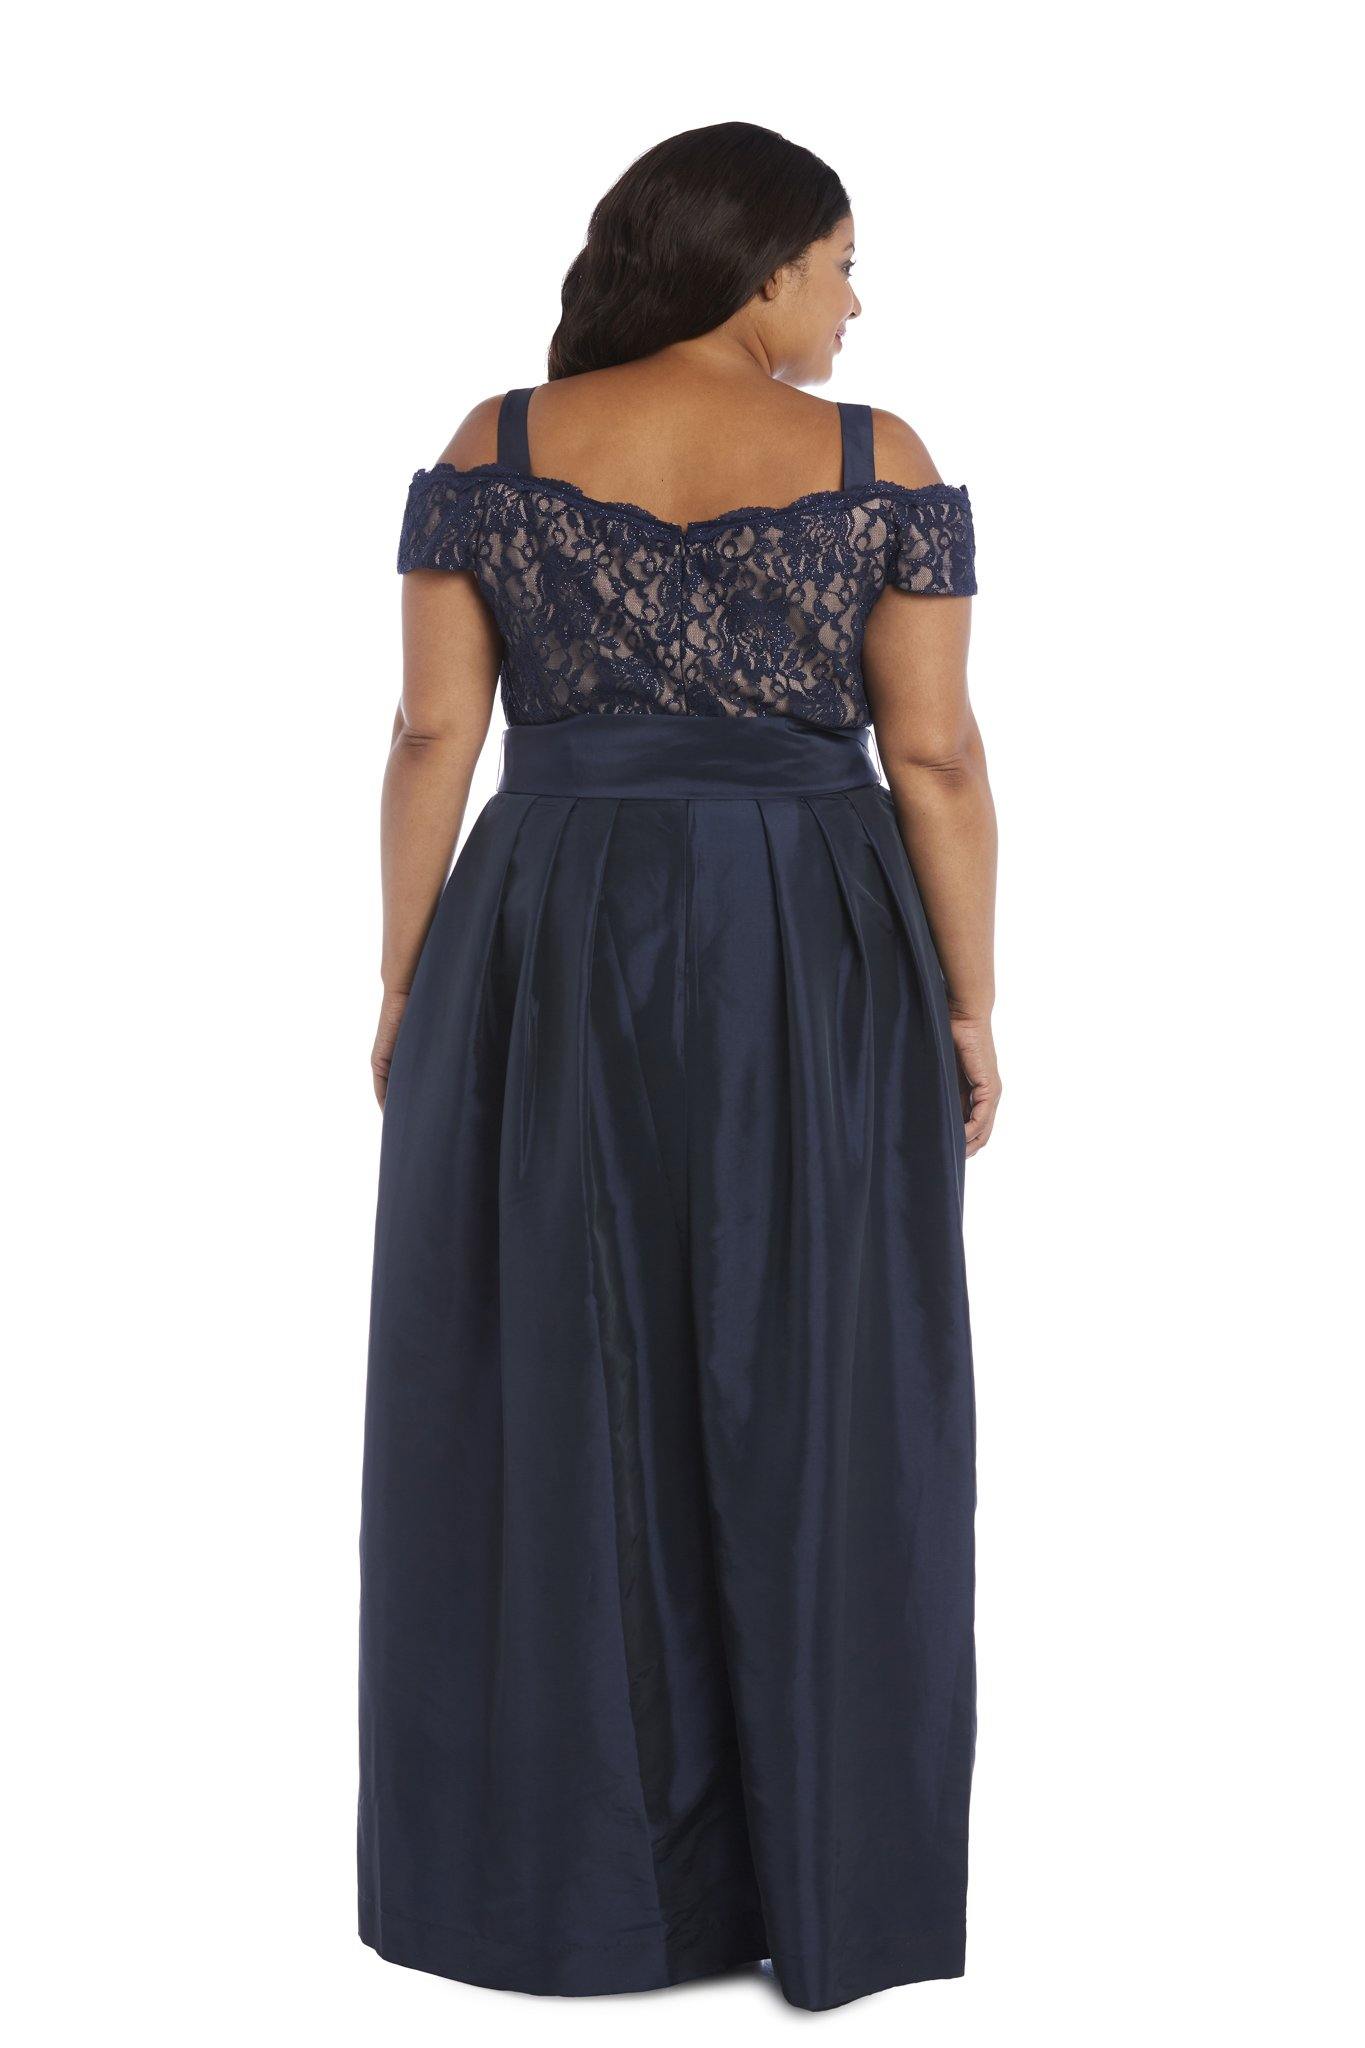 R&M Richards Long Plus Size Lace Top Dress 2056W - The Dress Outlet